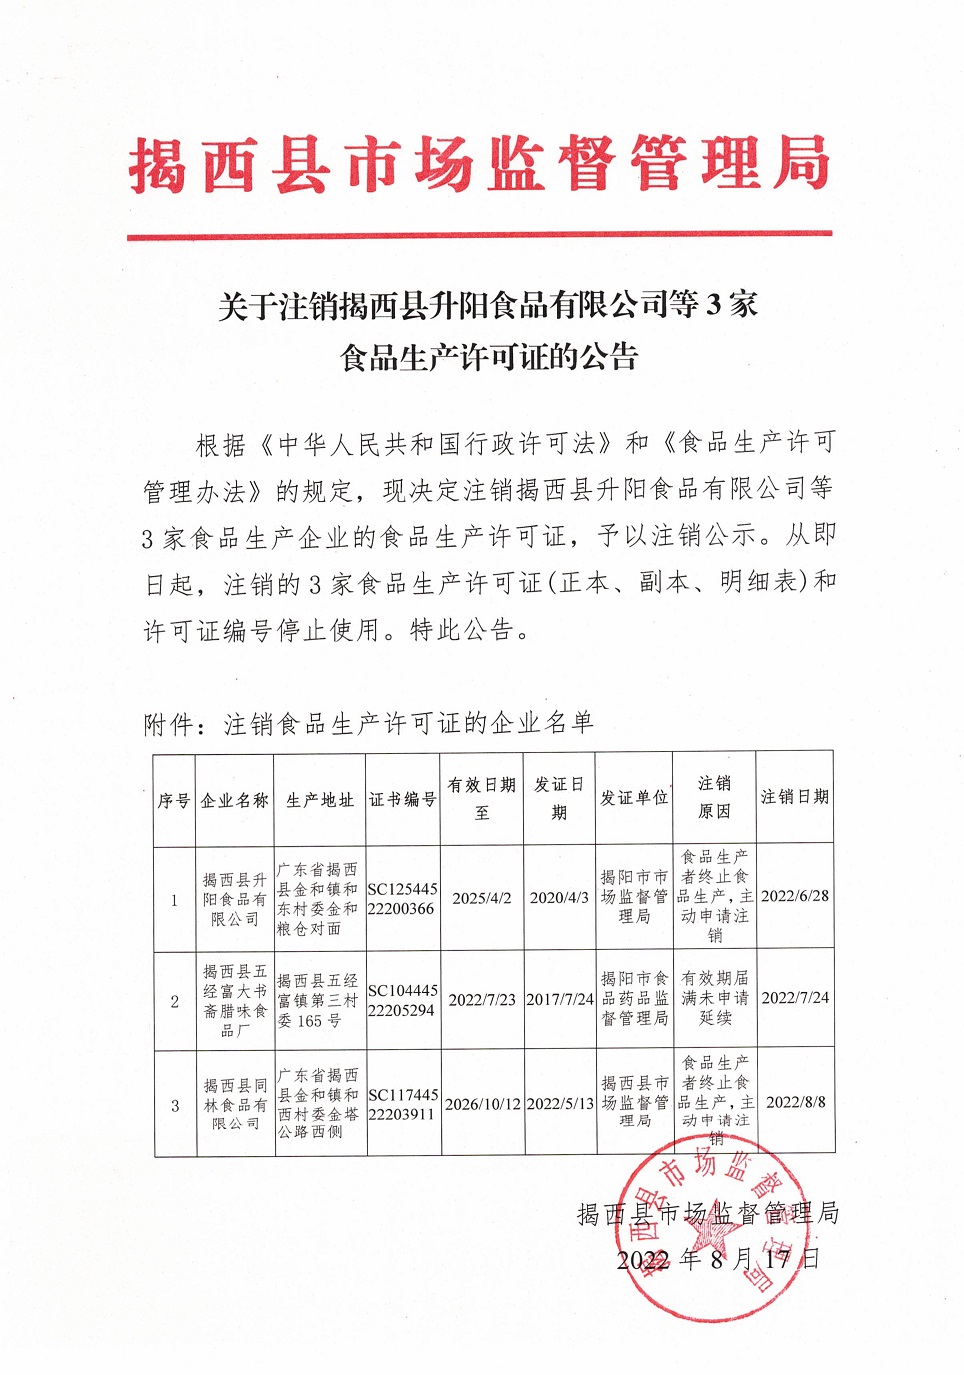 关于注销揭西县升阳食品有限公司等3家食品生产许可证的公告2022.8.18.jpg